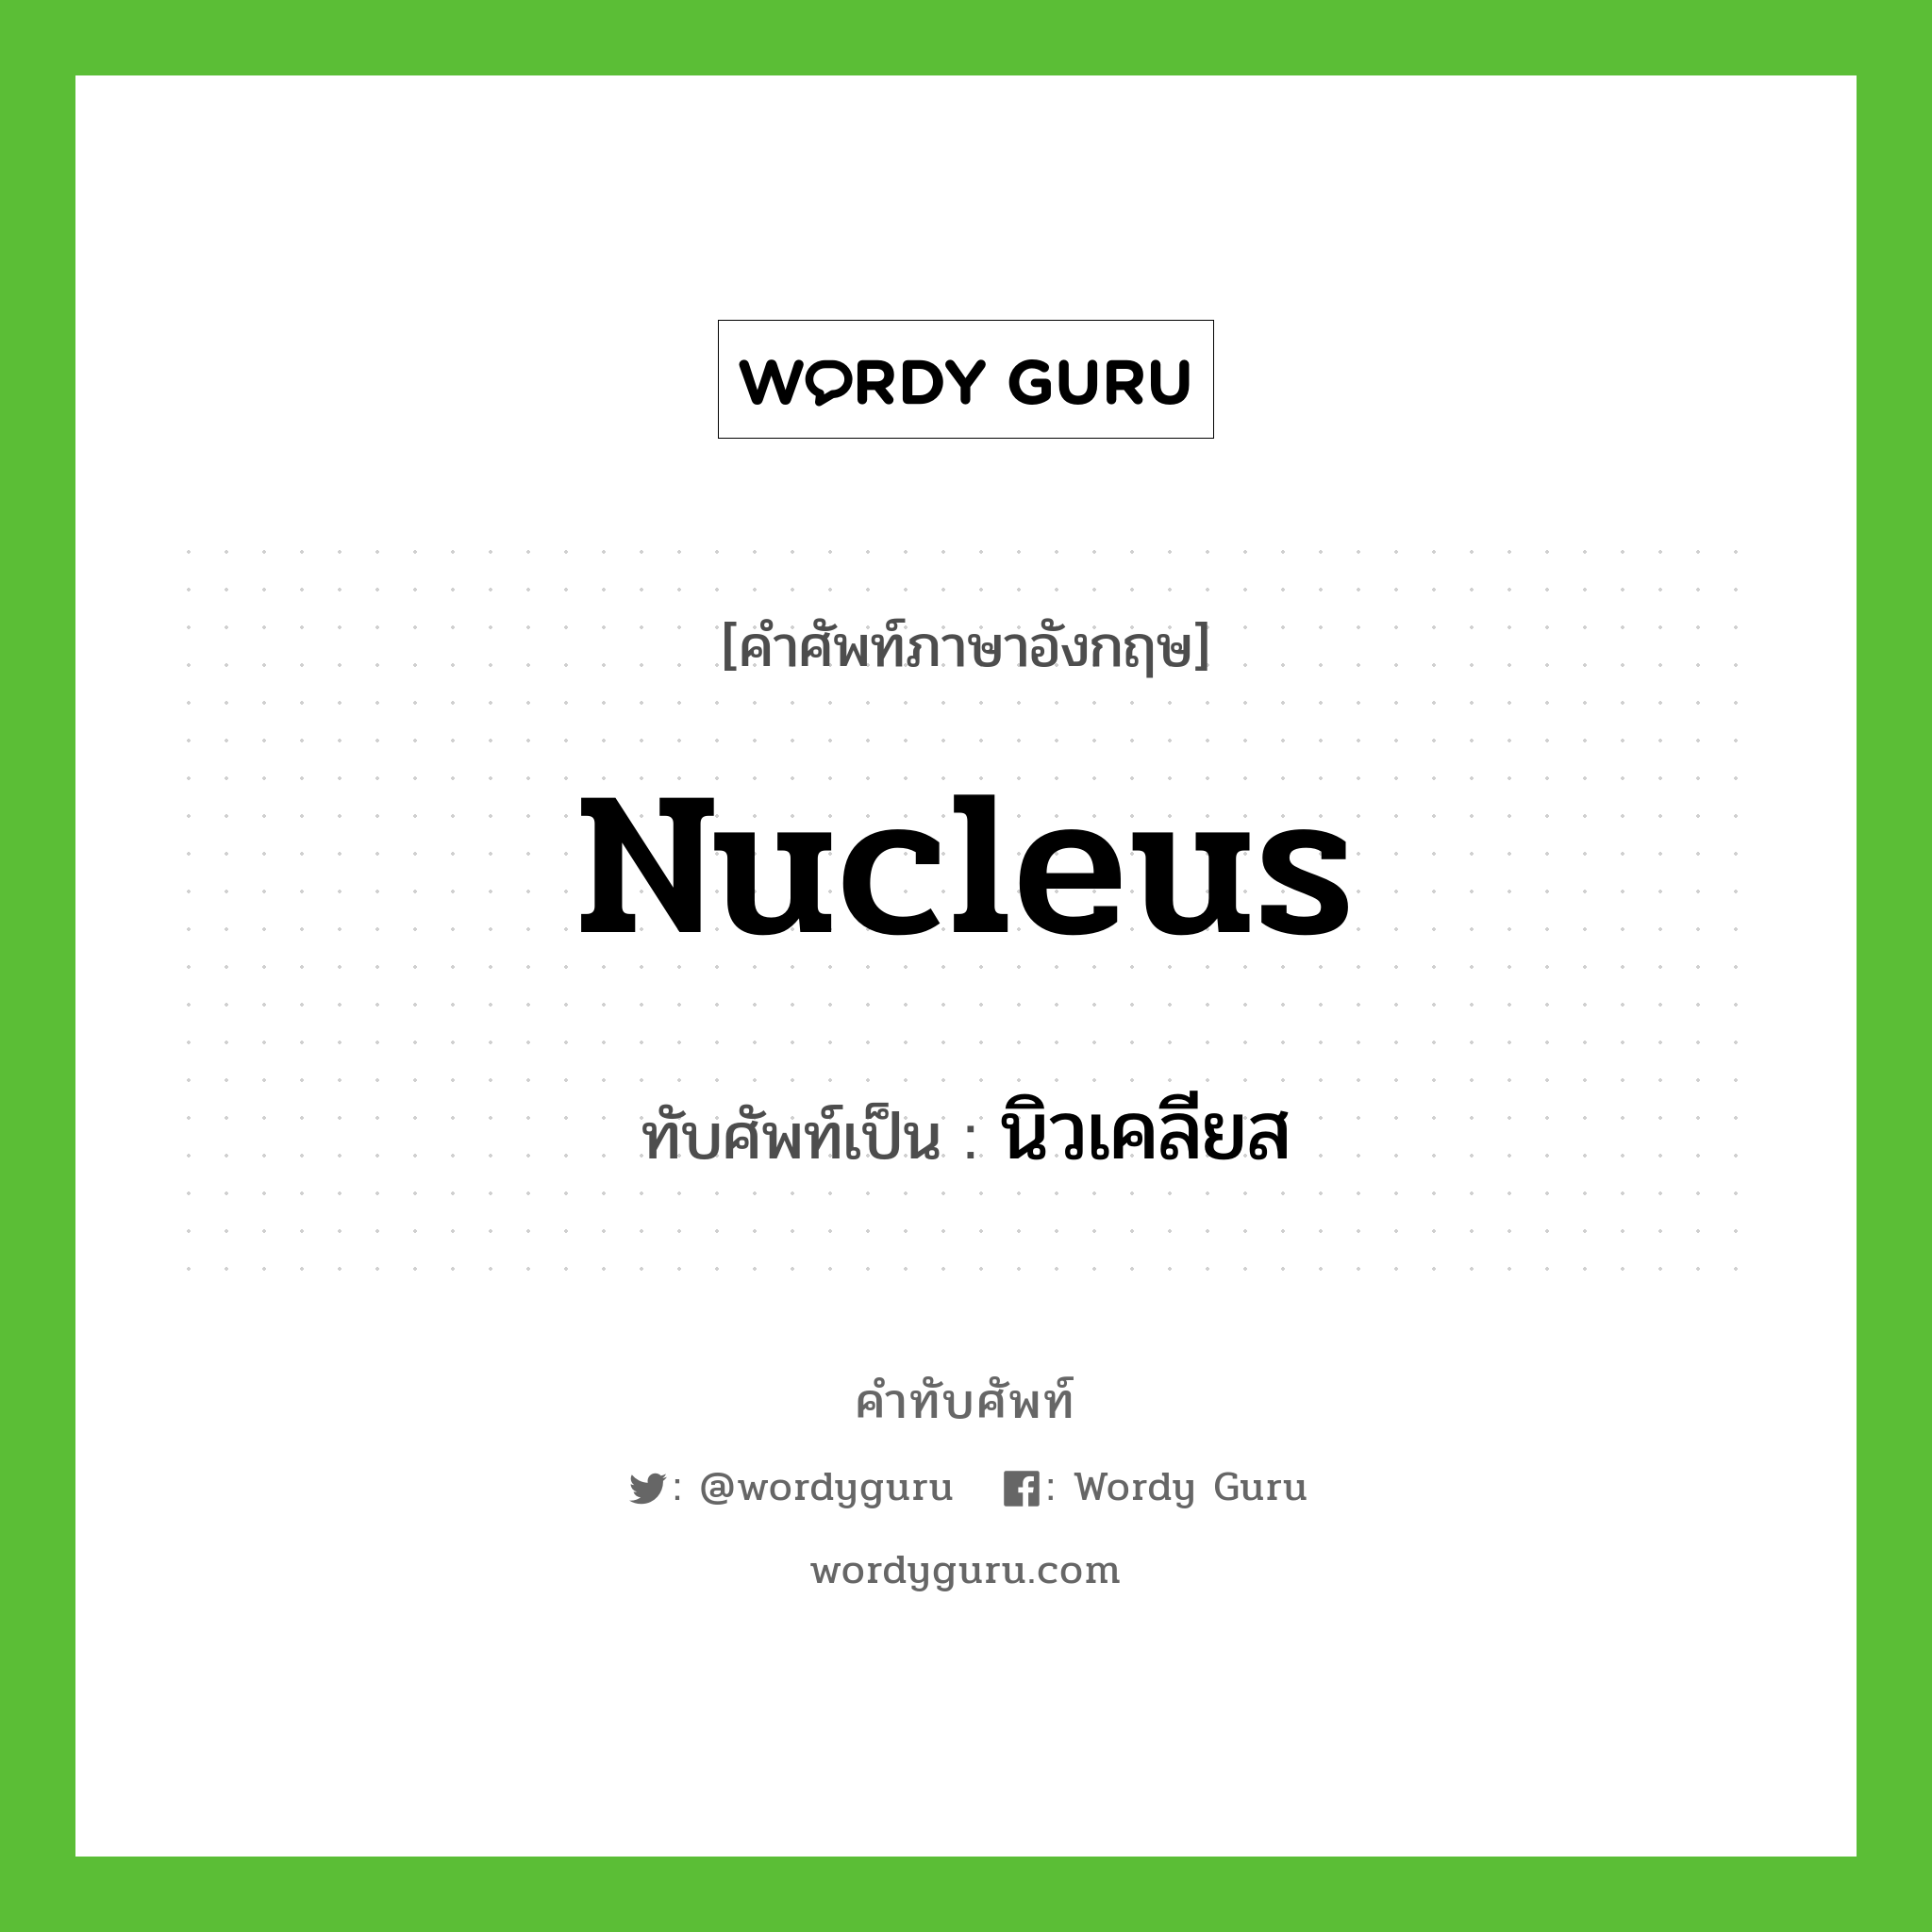 nucleus เขียนเป็นคำไทยว่าอะไร?, คำศัพท์ภาษาอังกฤษ nucleus ทับศัพท์เป็น นิวเคลียส